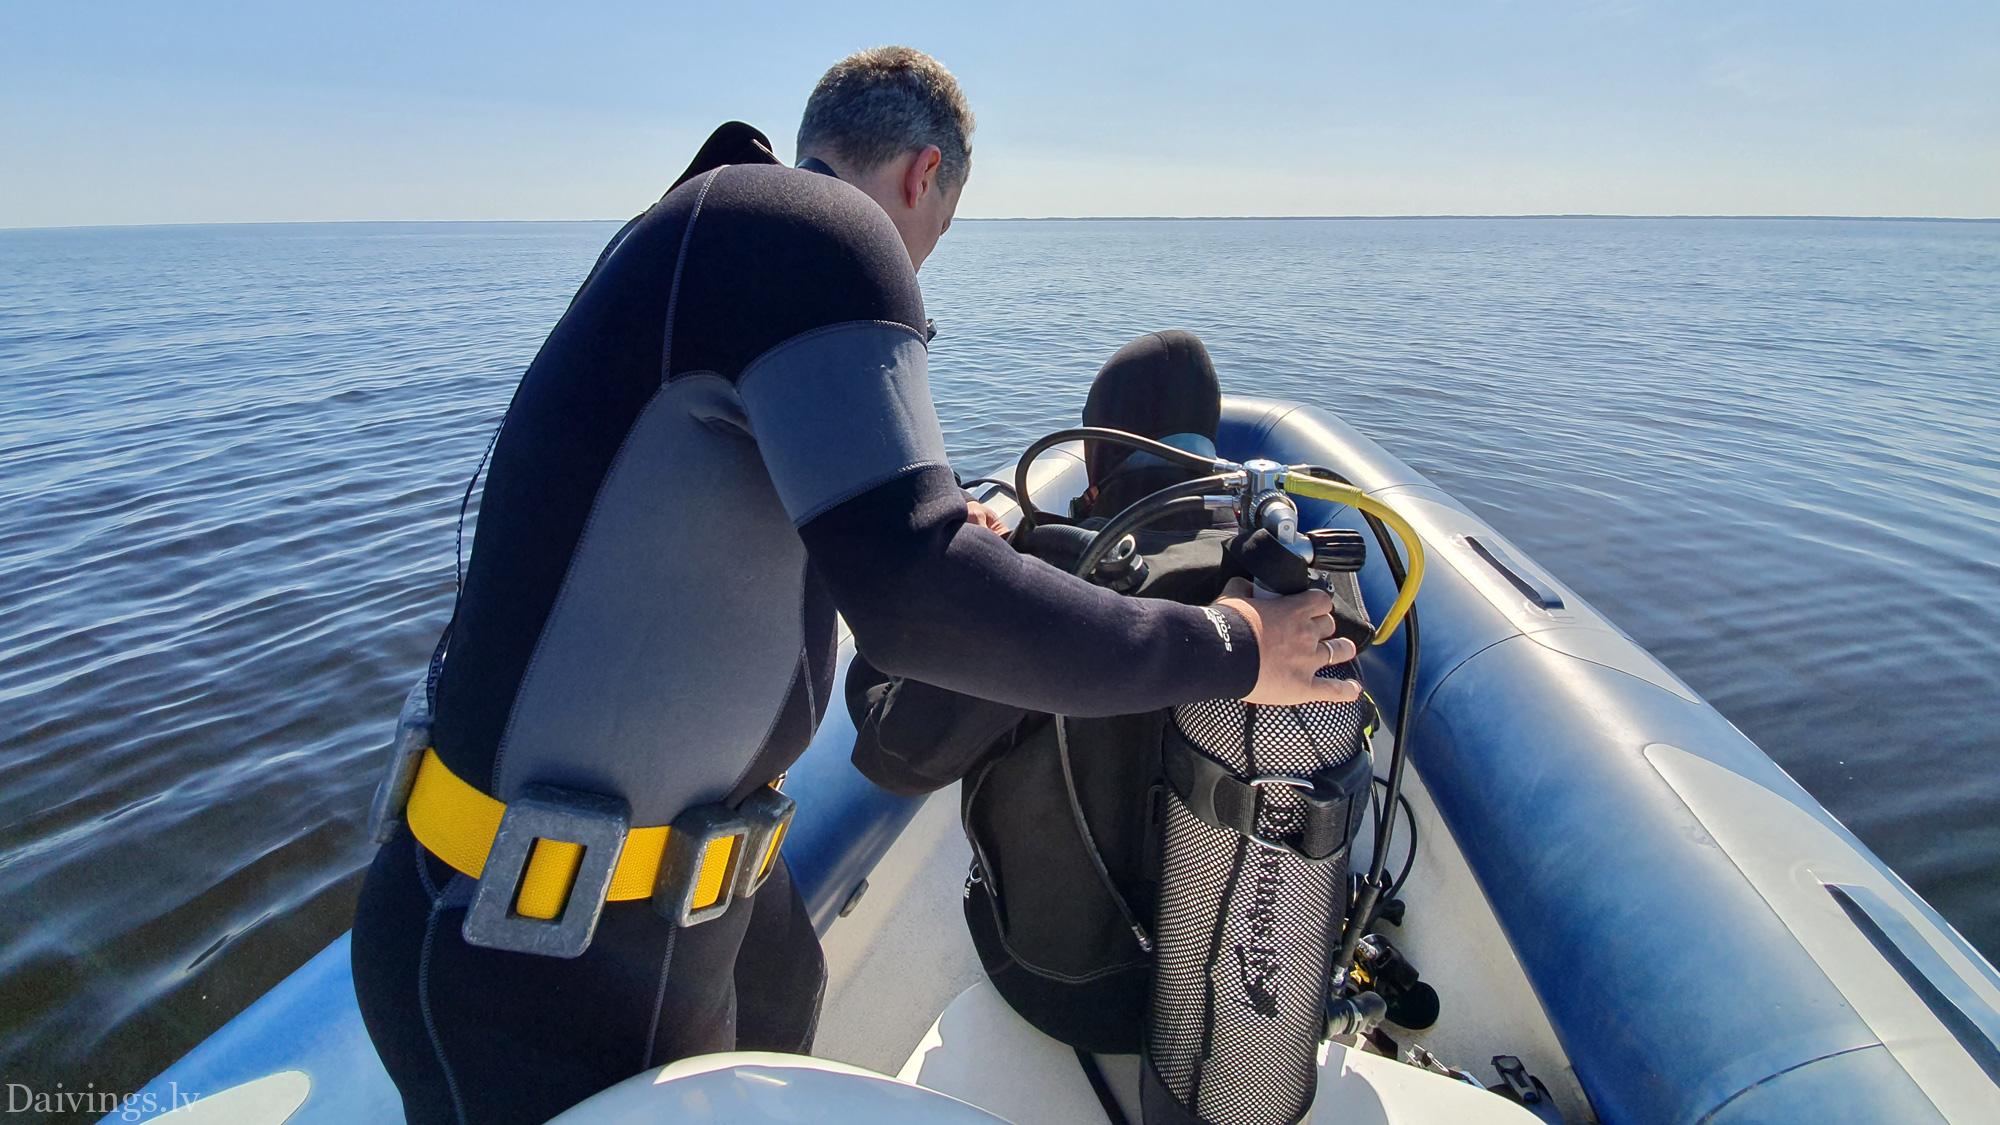 Les plongeurs du RIB Motorboat Diving Club Daivings inspectent l'épave